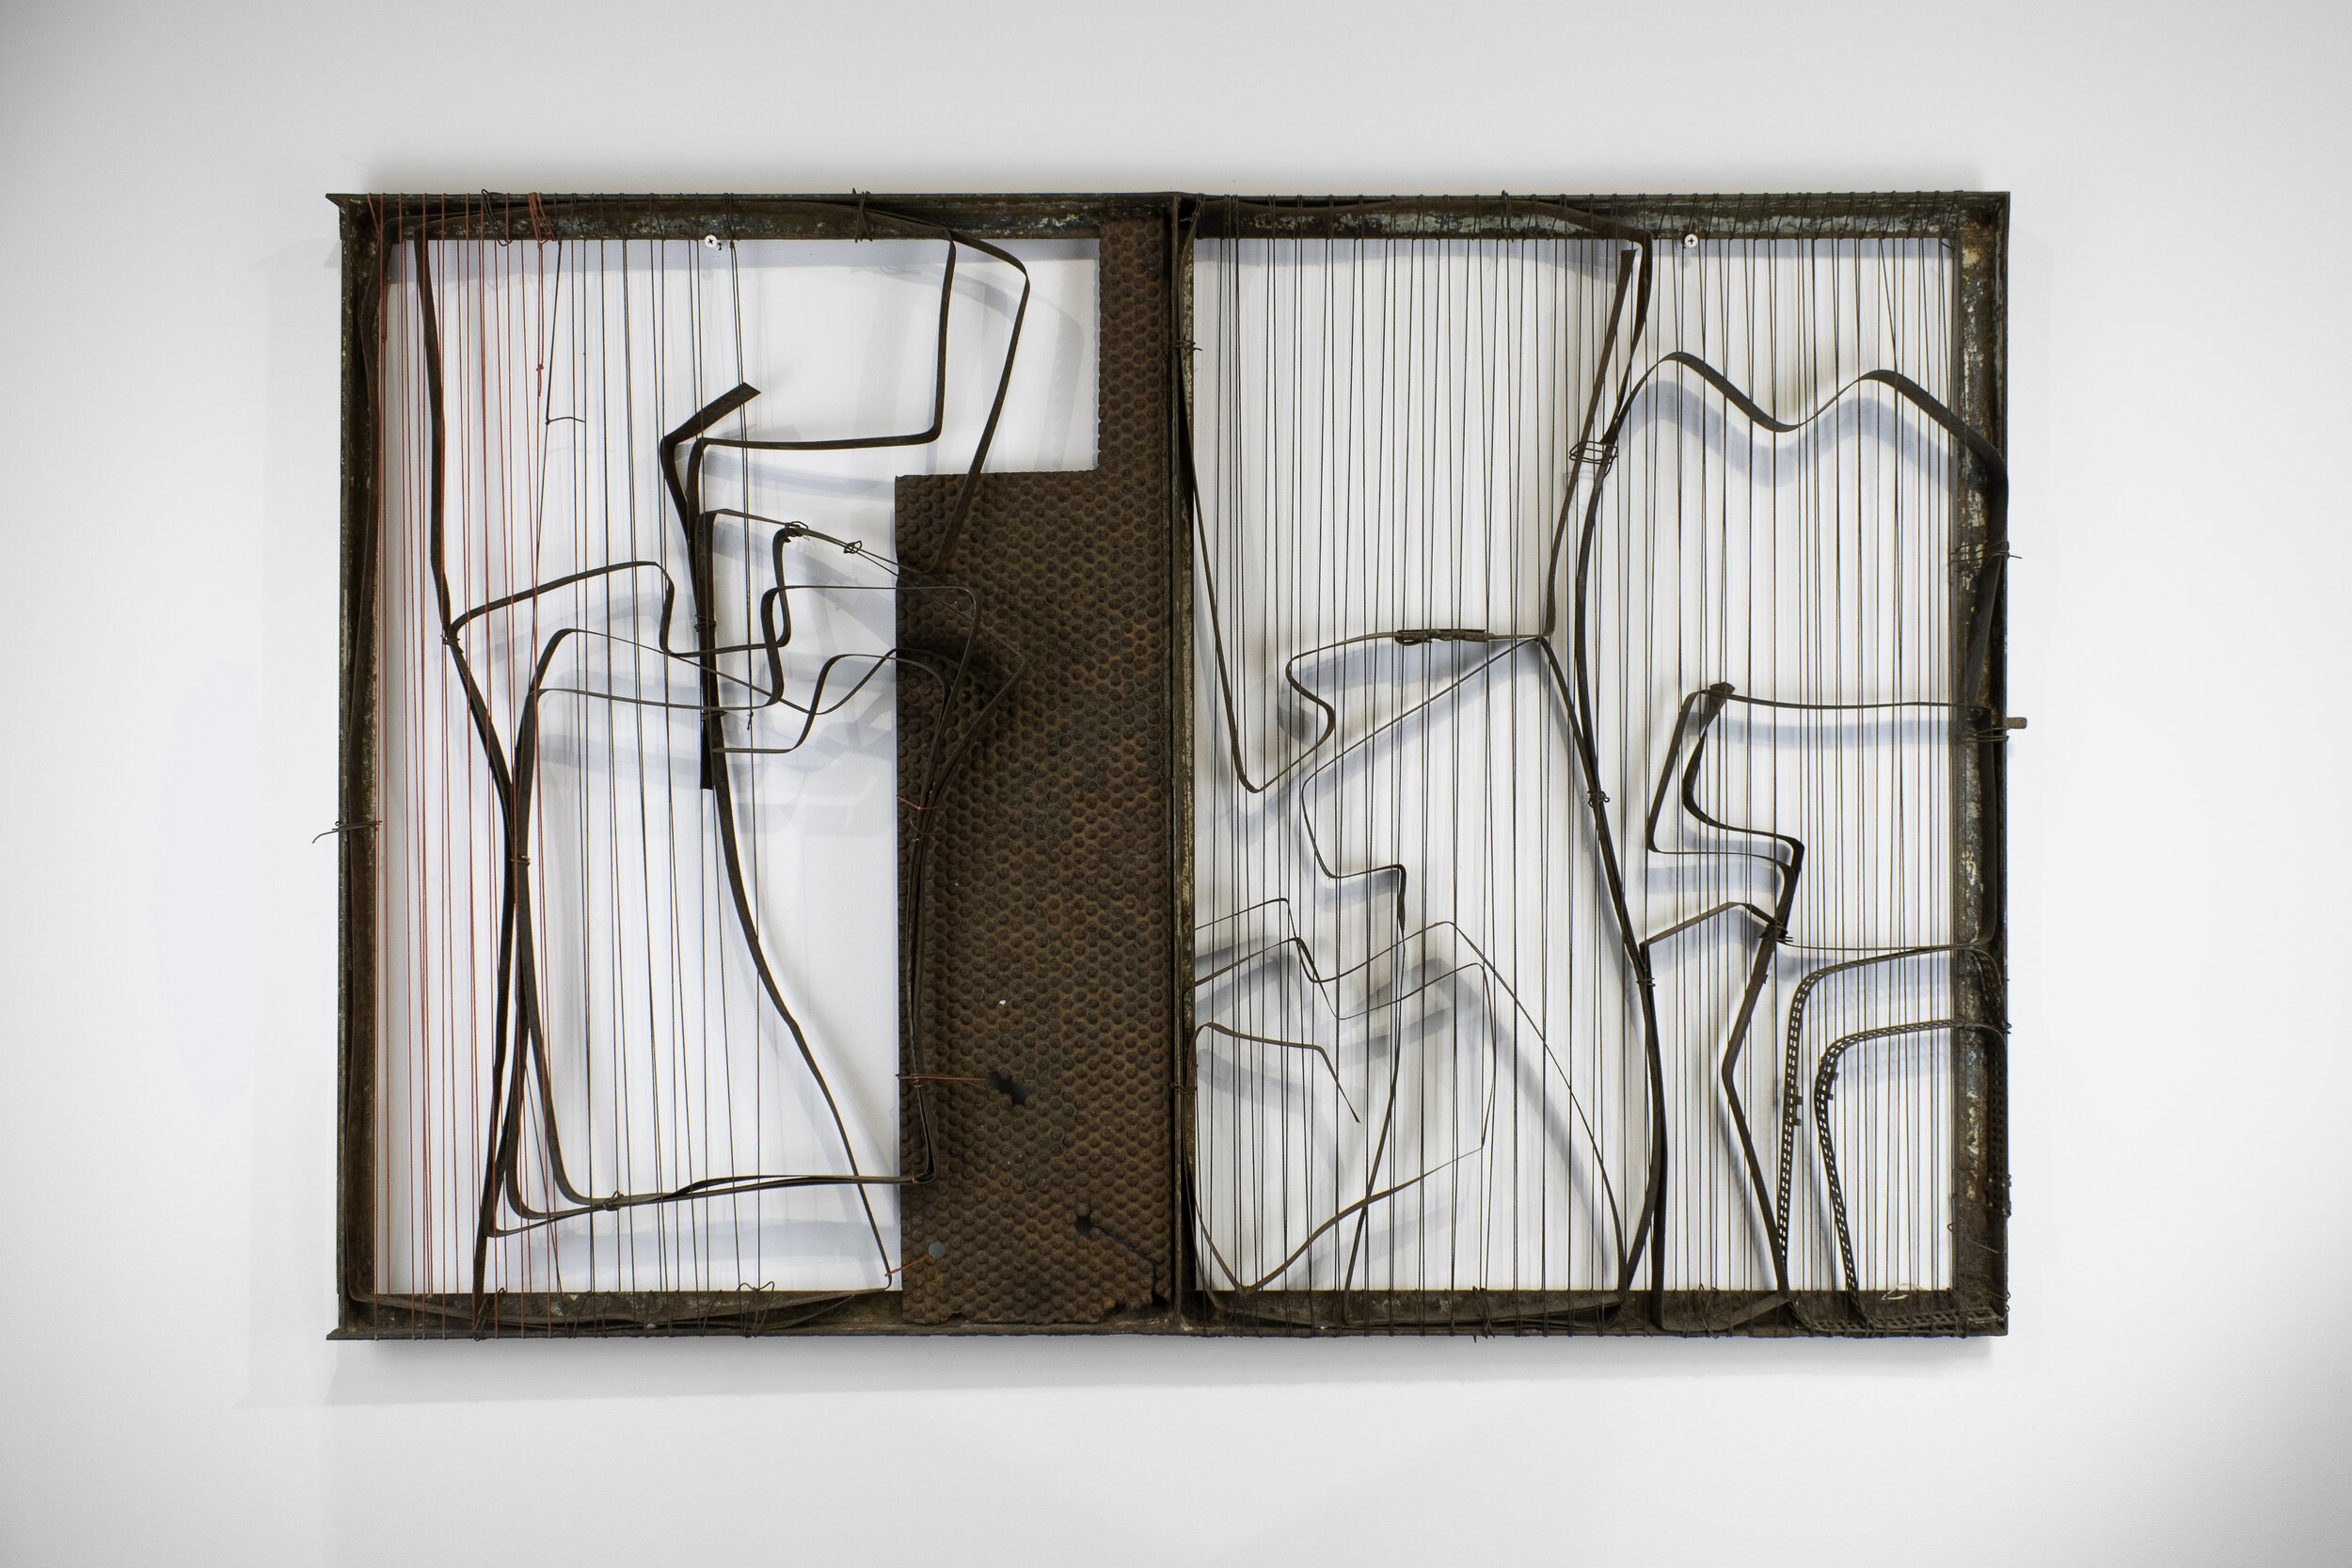 Verónica Vázquez, De la Serie Siluetas, 2018, Iron, wire and thread, 76 x 112 x 5 cm